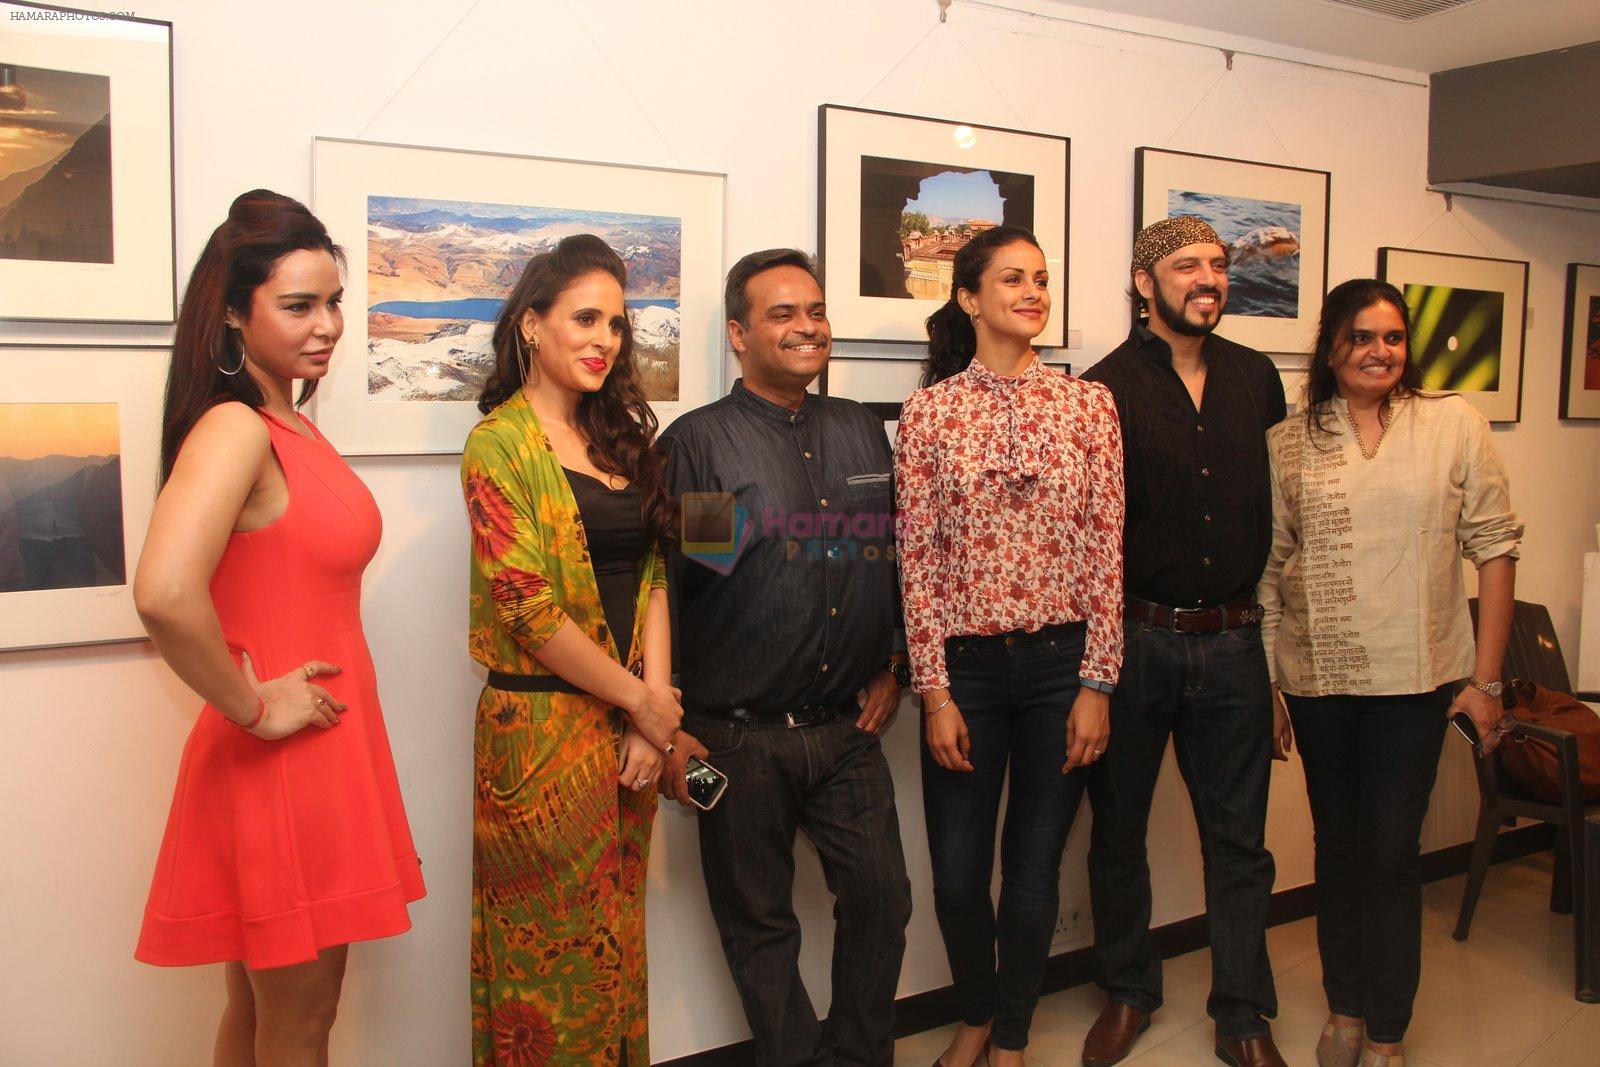 Gul panag, Kavita Verma at Melted core photo exhibition in Kalaghoda, Mumbai on 4th Nov 2014